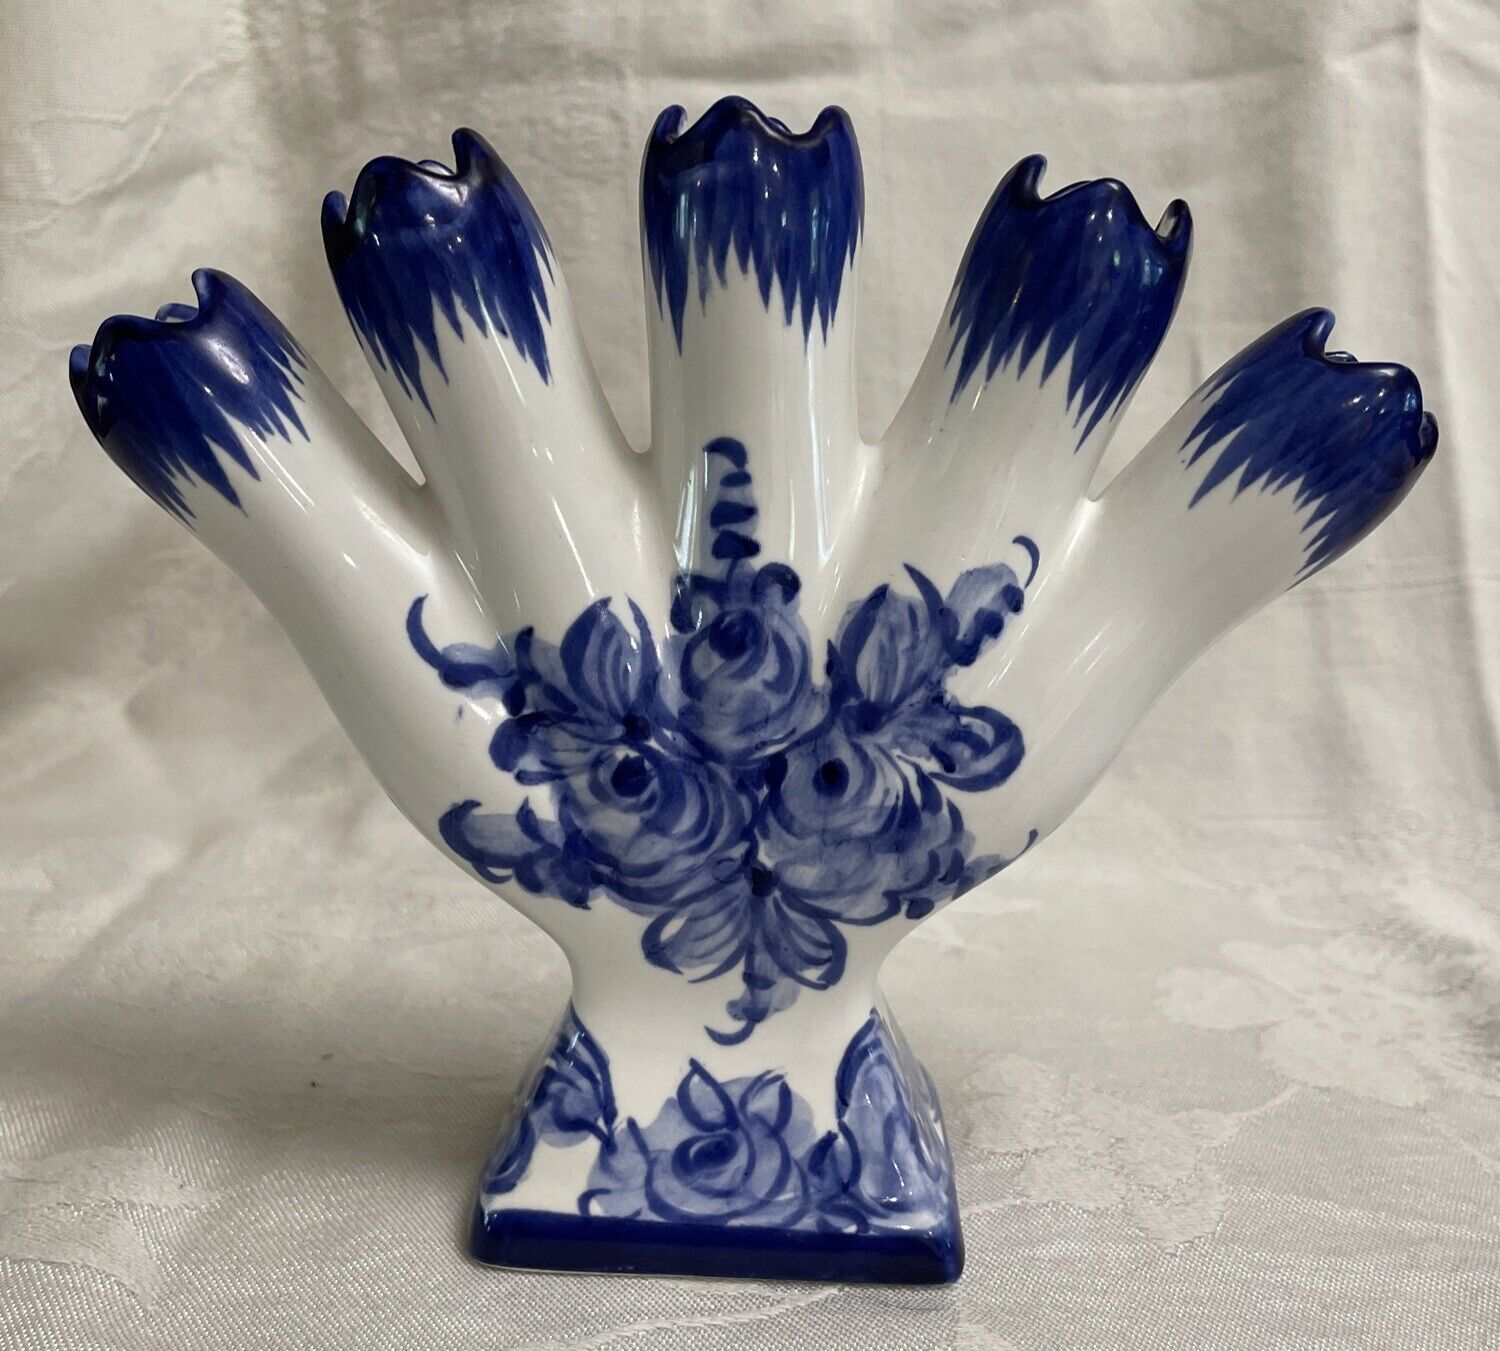 Vintage Hand Painted Five Finger Vase, Portugal, Blue & White Floral Design